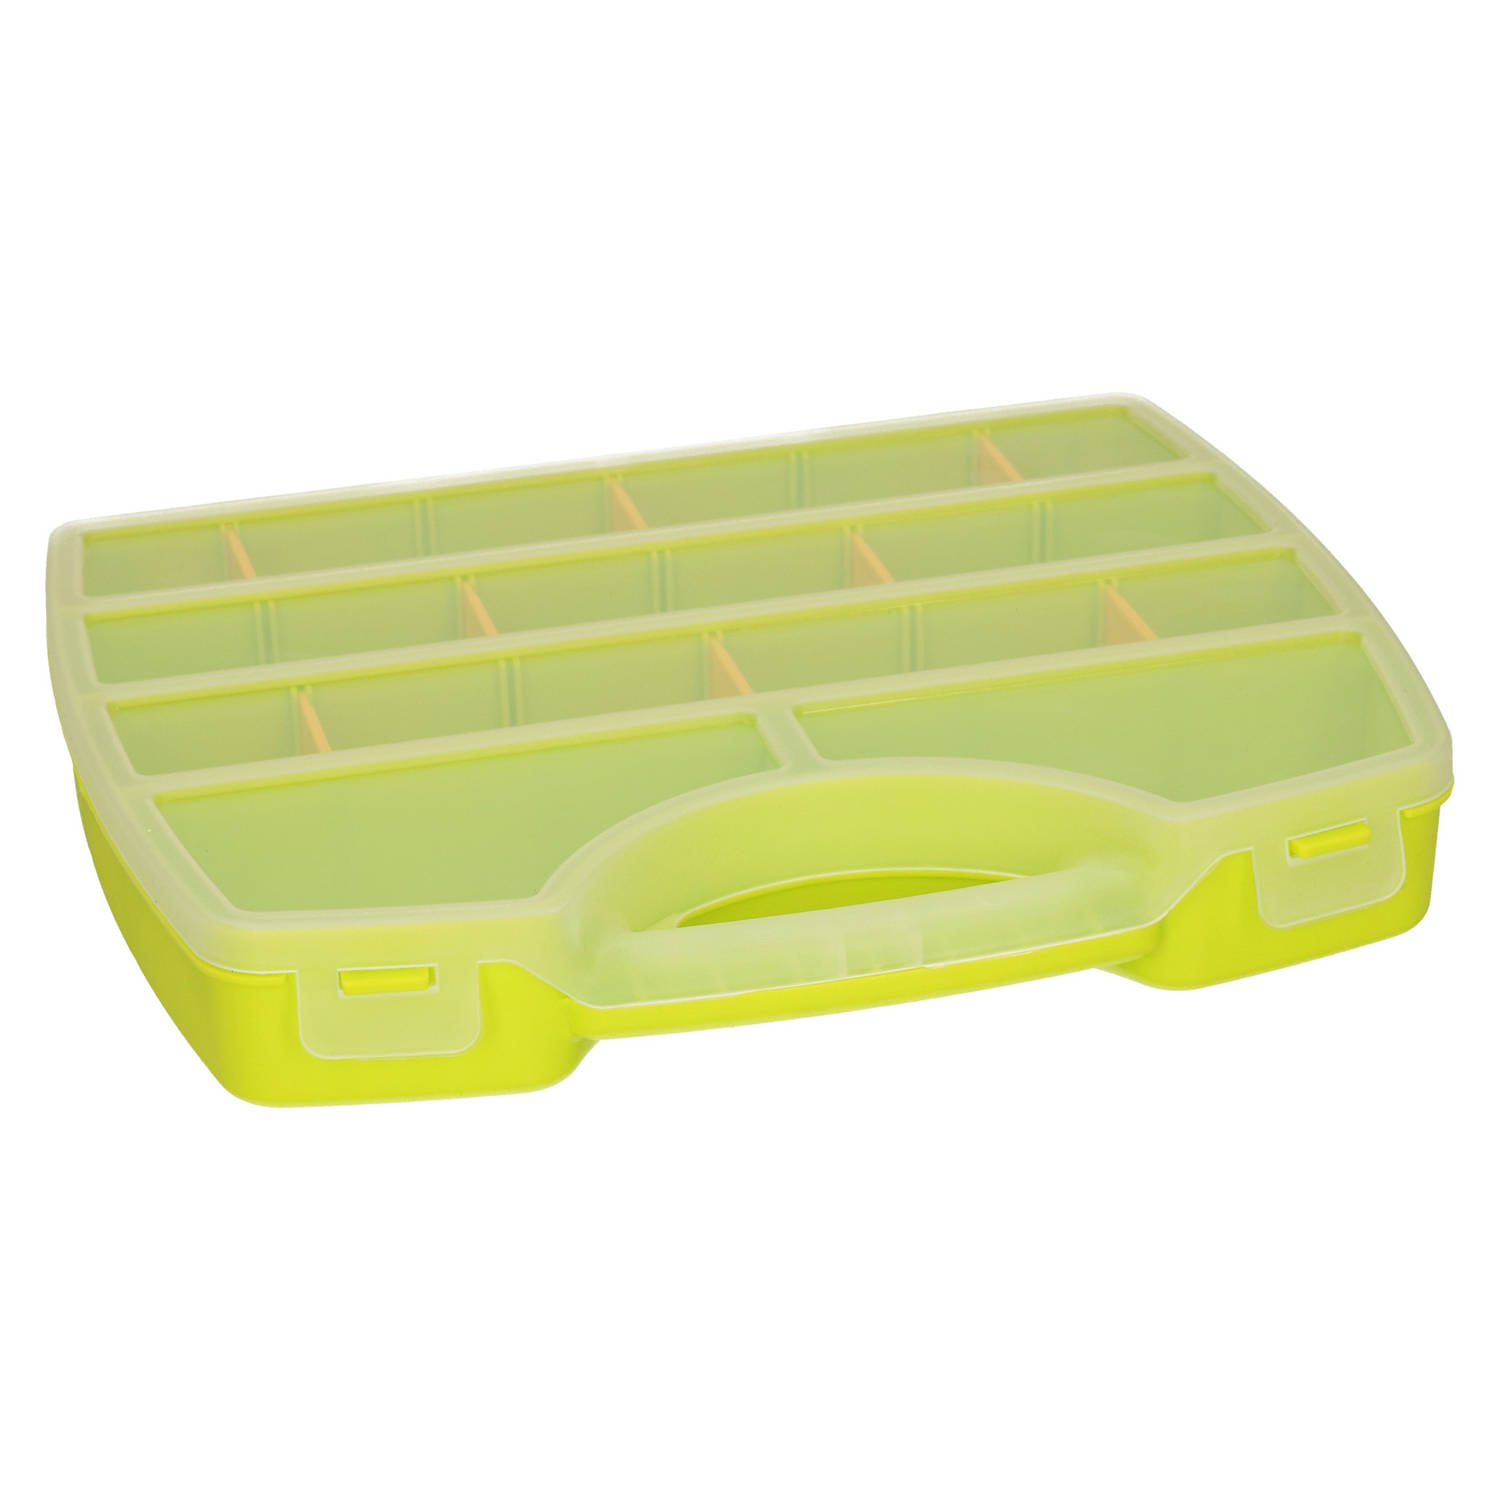 Plasticforte Opbergkoffertje-opbergdoos-sorteerbox 13-vaks kunststof groen 25 x 21 x 4 cm Opbergbox